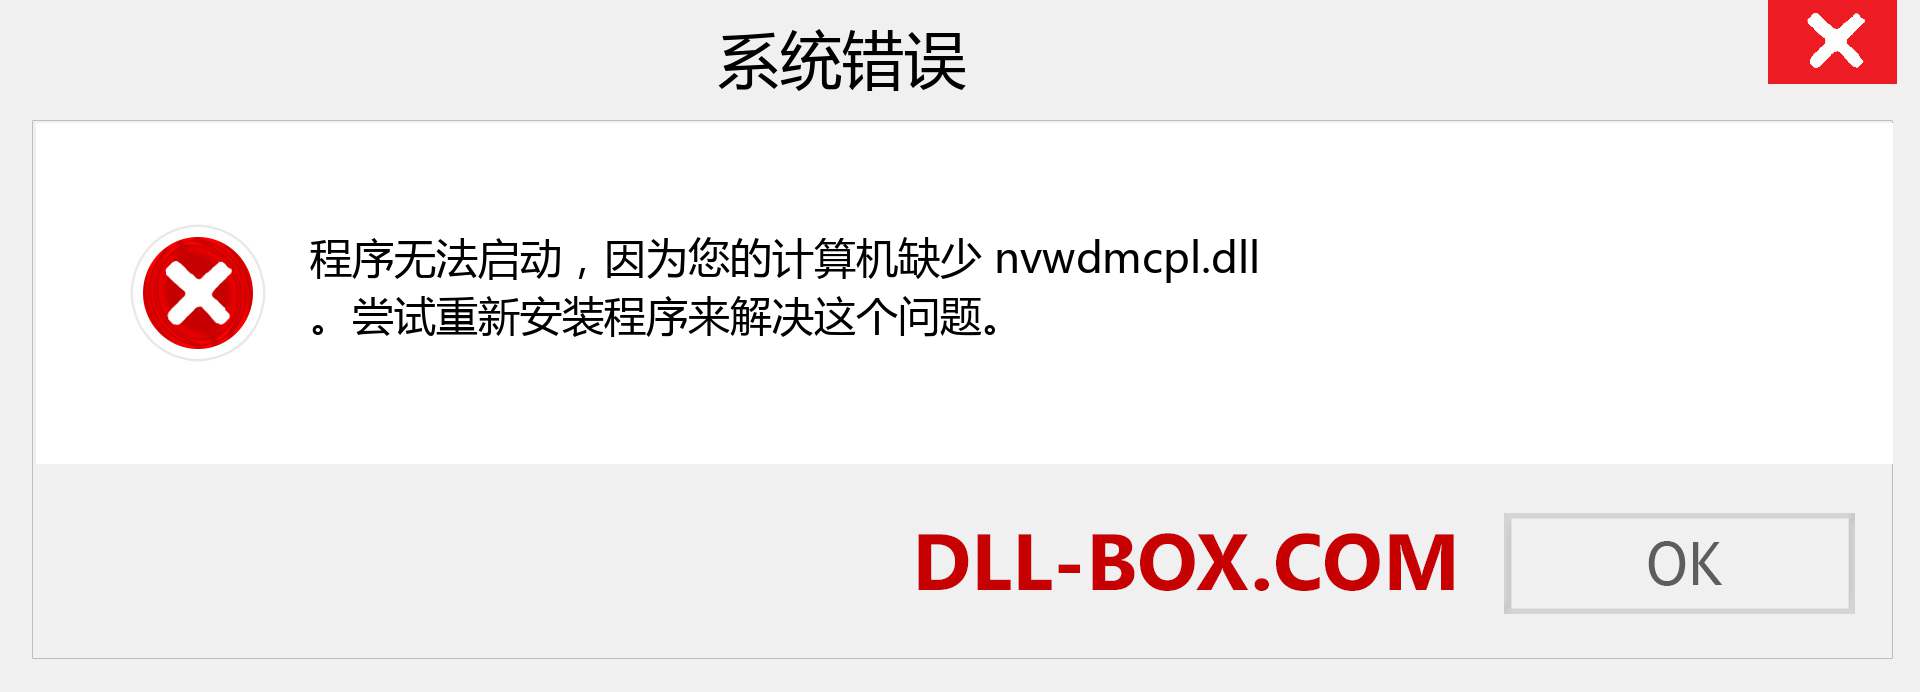 nvwdmcpl.dll 文件丢失？。 适用于 Windows 7、8、10 的下载 - 修复 Windows、照片、图像上的 nvwdmcpl dll 丢失错误